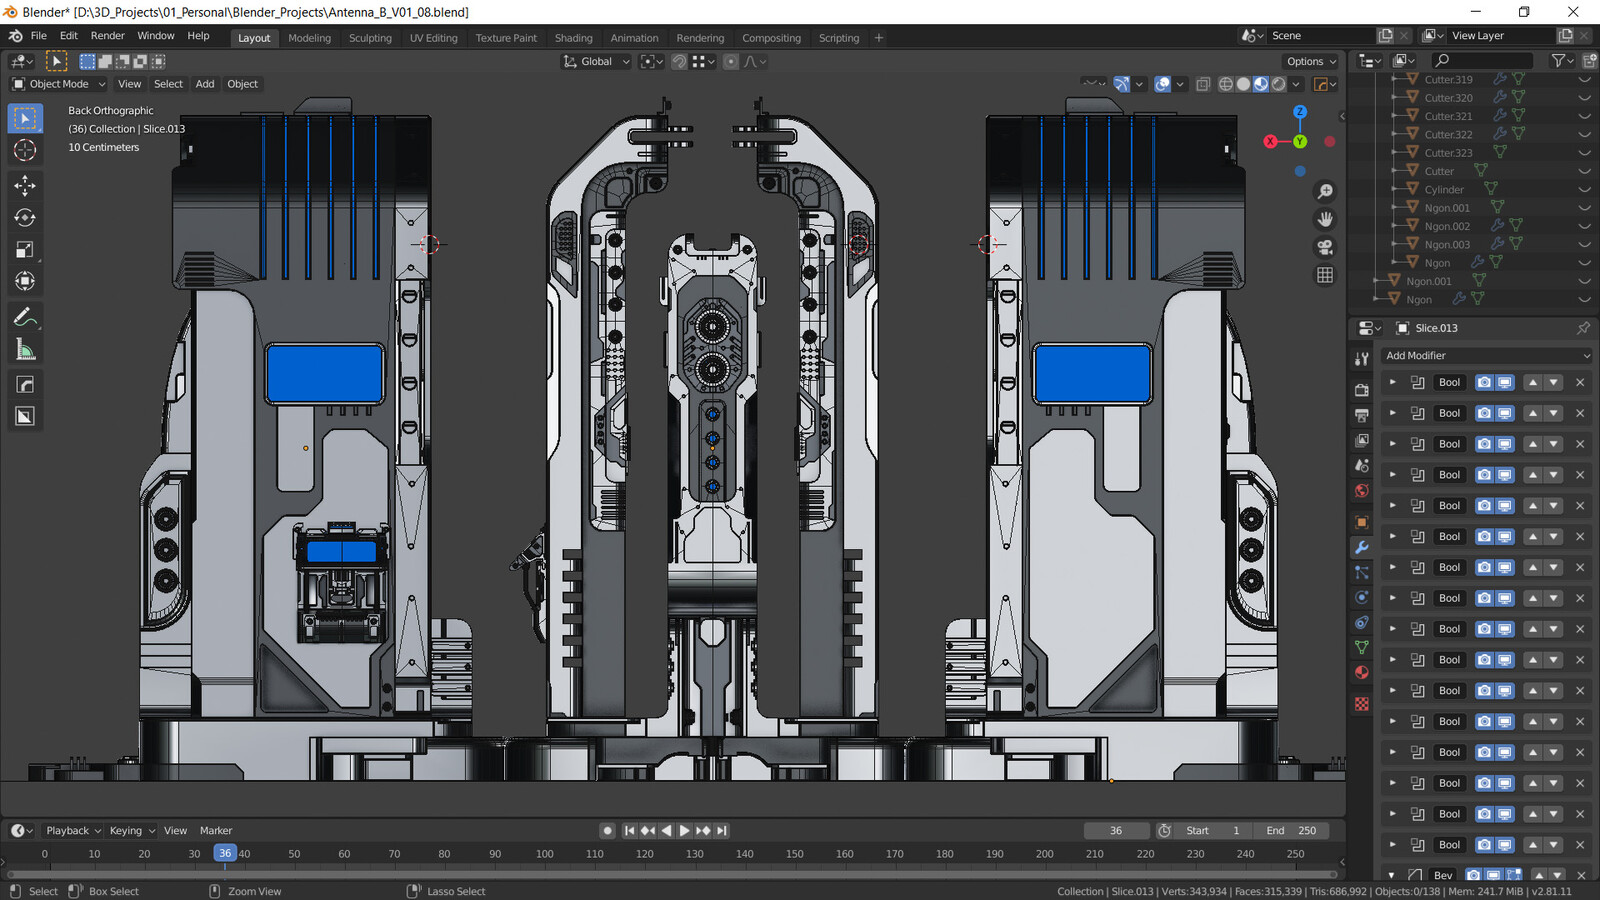 Main machine screenshot from Blender. Hardops/Boxcutter for modeling.